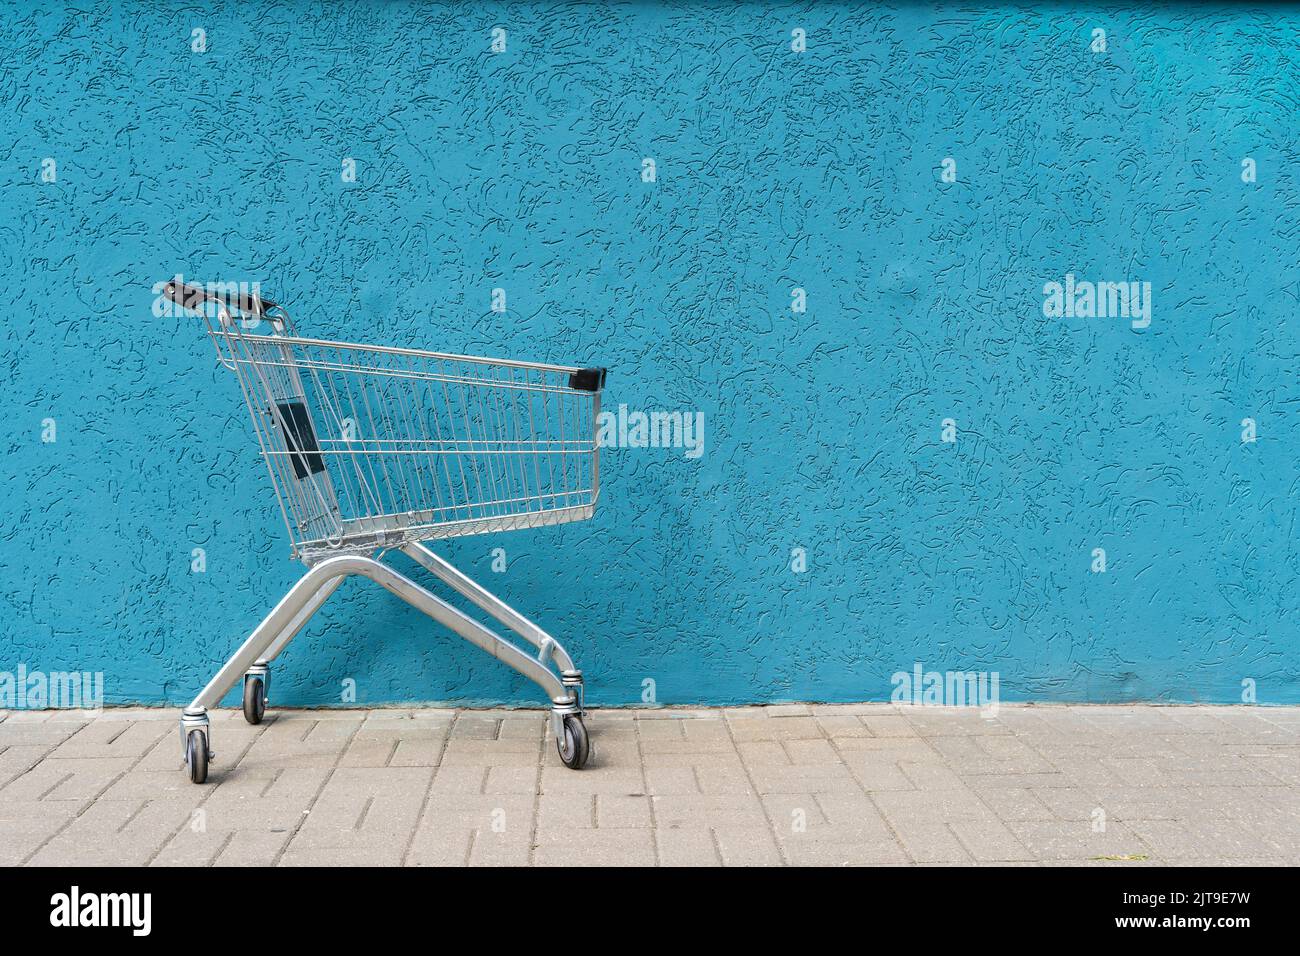 Supermarkt Cart Trolley auf leeren farbigen Wand Hintergrund. Retail, Sale, Shopping-Konzept. Hochwertige Fotos Stockfoto